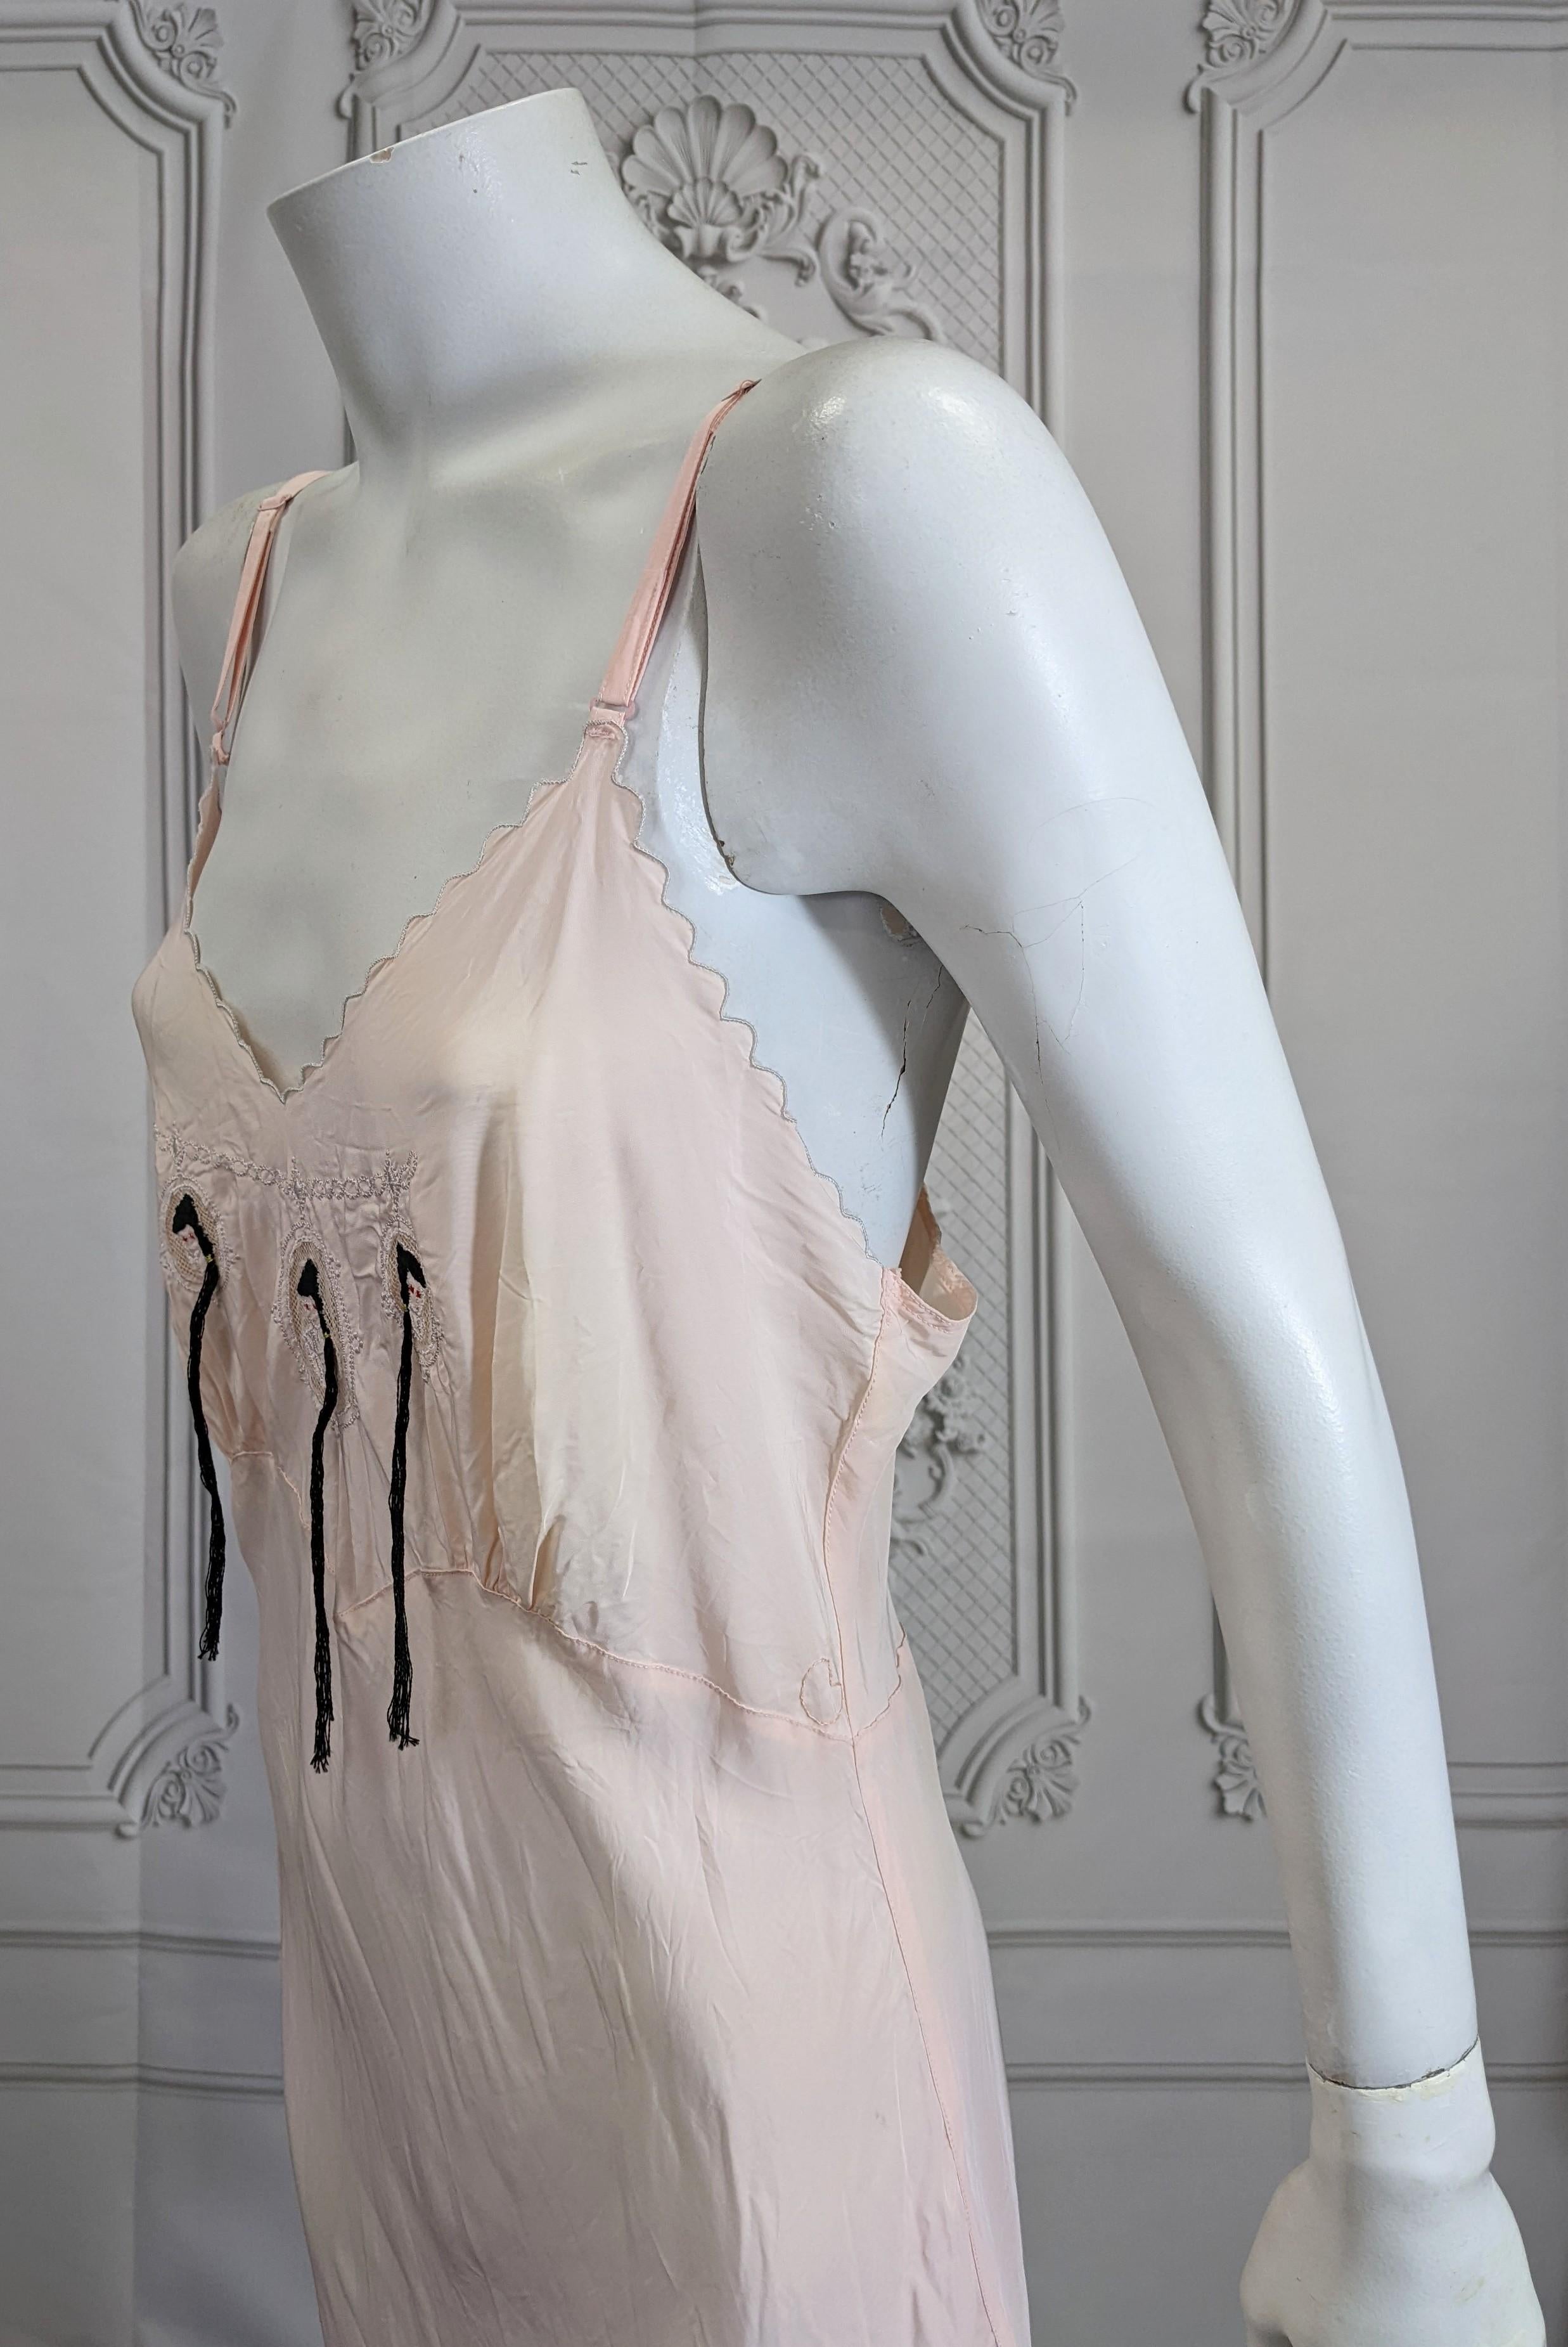 Art Deco Slip Dress, Upcycled von Studio VL. Rosafarbenes Unterkleid aus den 1930er Jahren mit Kameenstickerei von 3 Jungfrauen. Die 3 Mädchen aus schwarzer Baumwolle mit roten Pupillen wurden mit handgestickten Haaren und Pferdeschwänzen versehen,